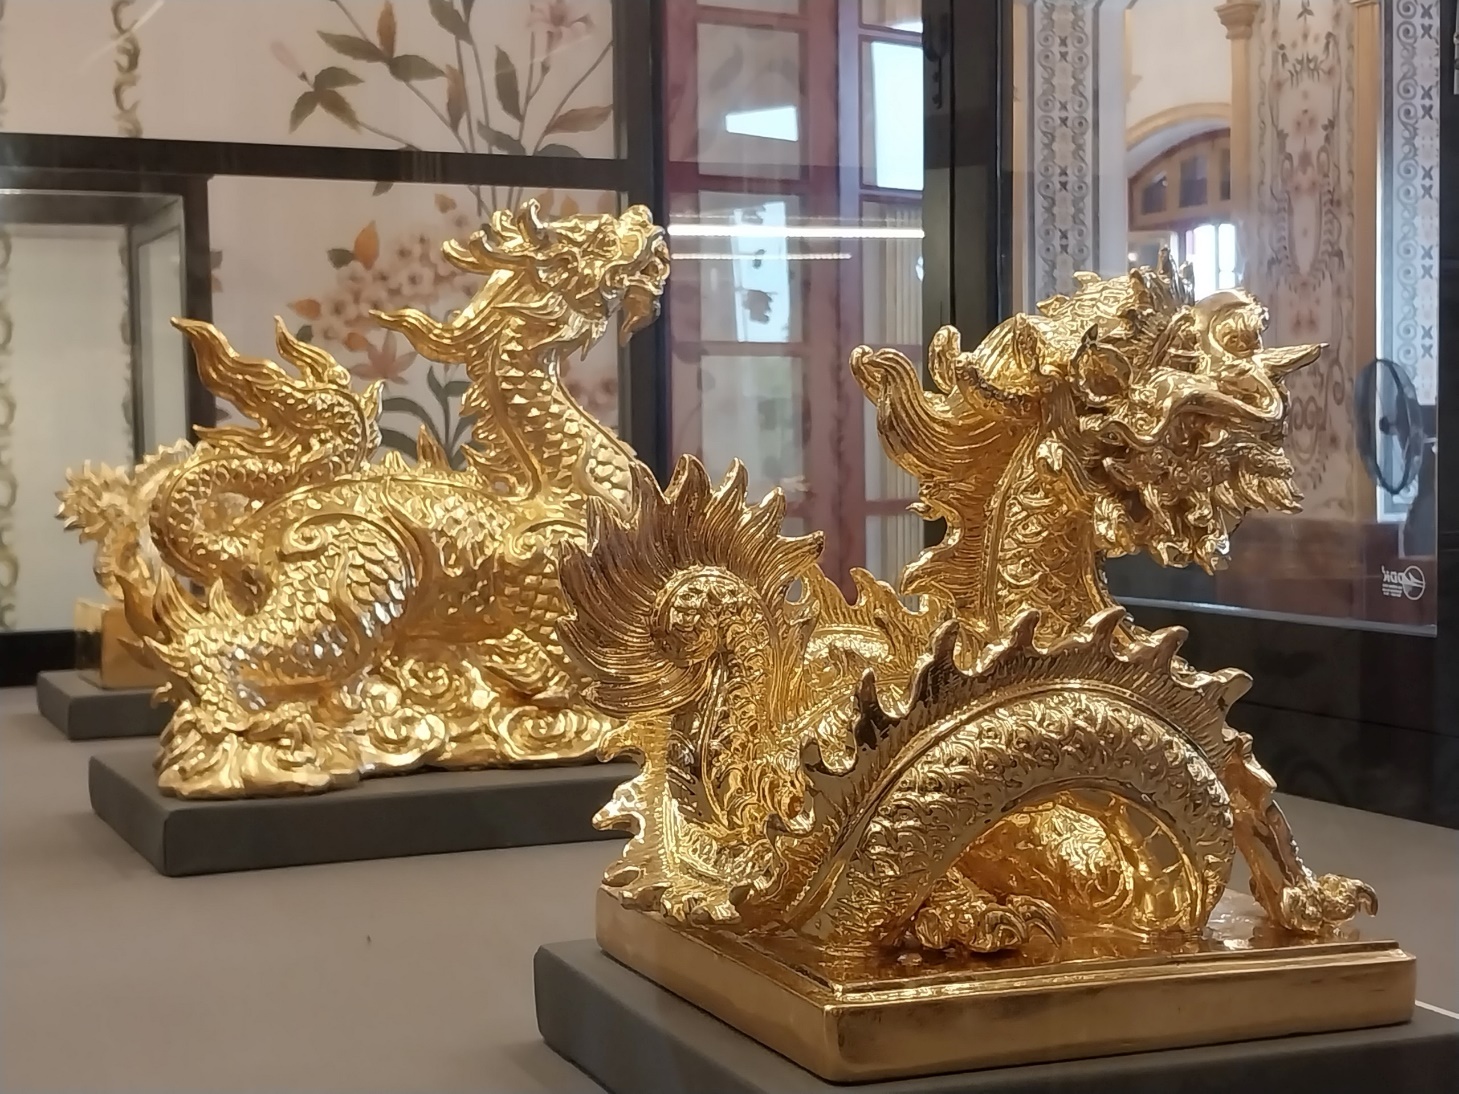 Chiêm ngưỡng "Biểu tượng rồng" - Tuyệt tác nghệ thuật gốm sứ Việt Nam - 12